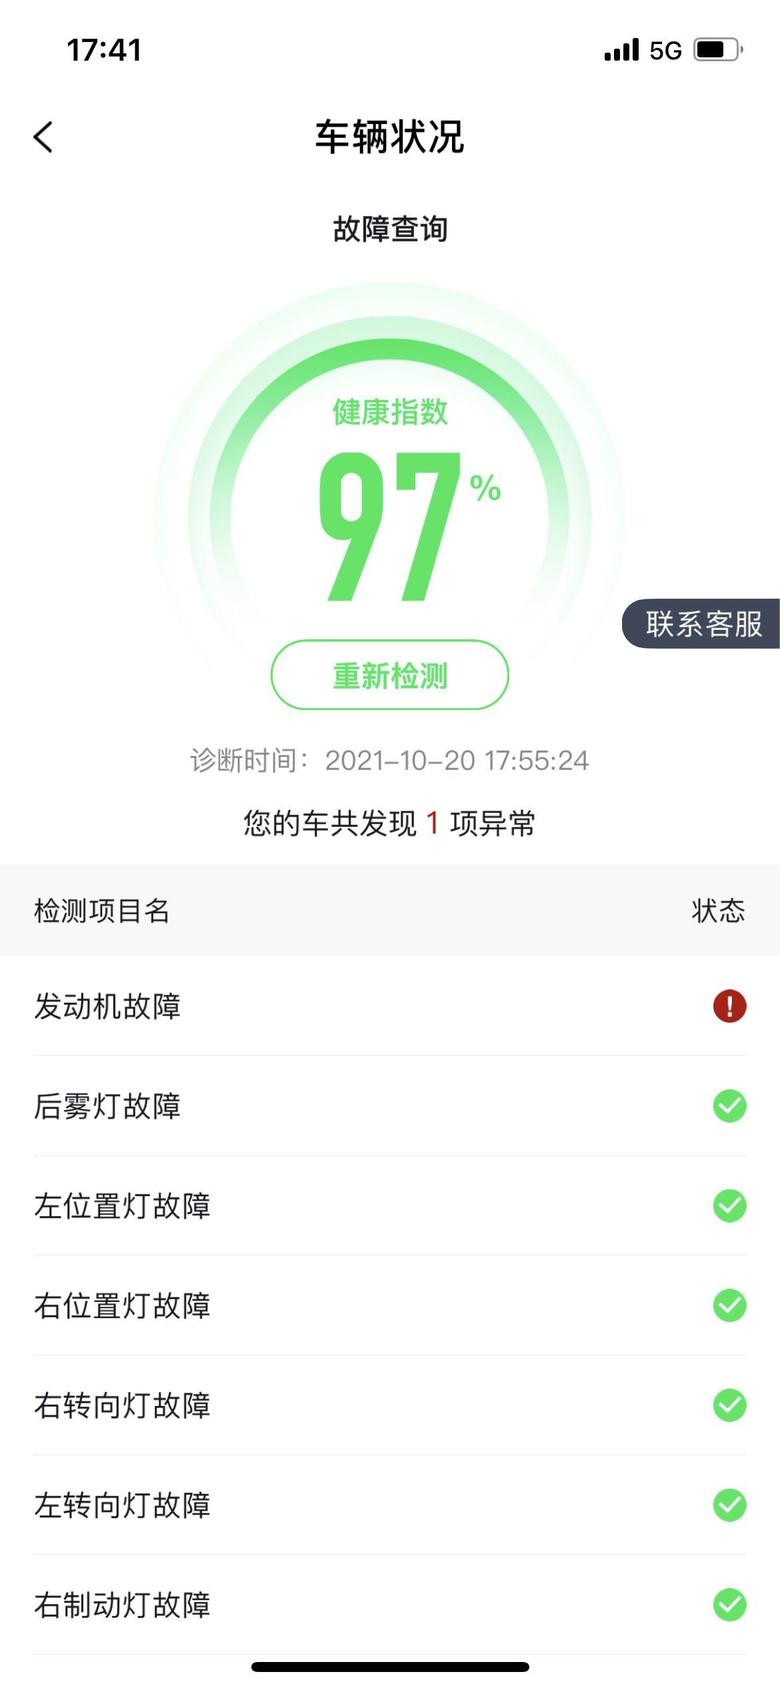 北京x7 app显示发动机故障，但是启动车辆也没什么问题啊